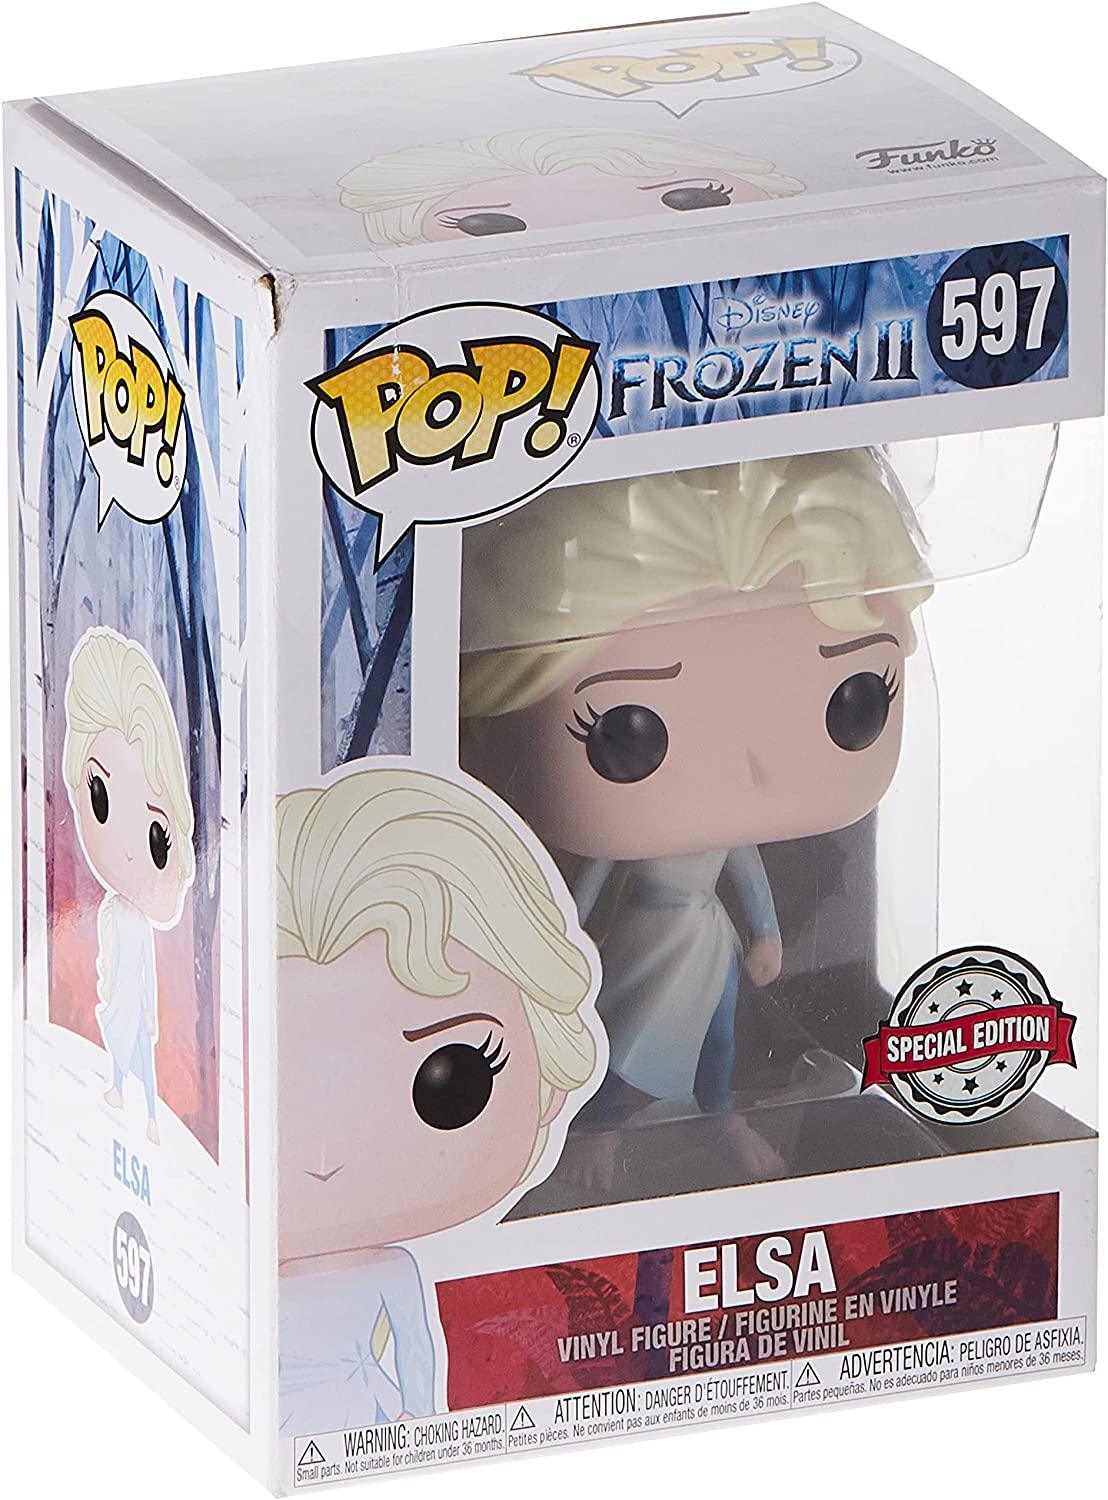 Frozen II: Funko Pop! - Elsa #597 Special Edition - Magic Dreams Store